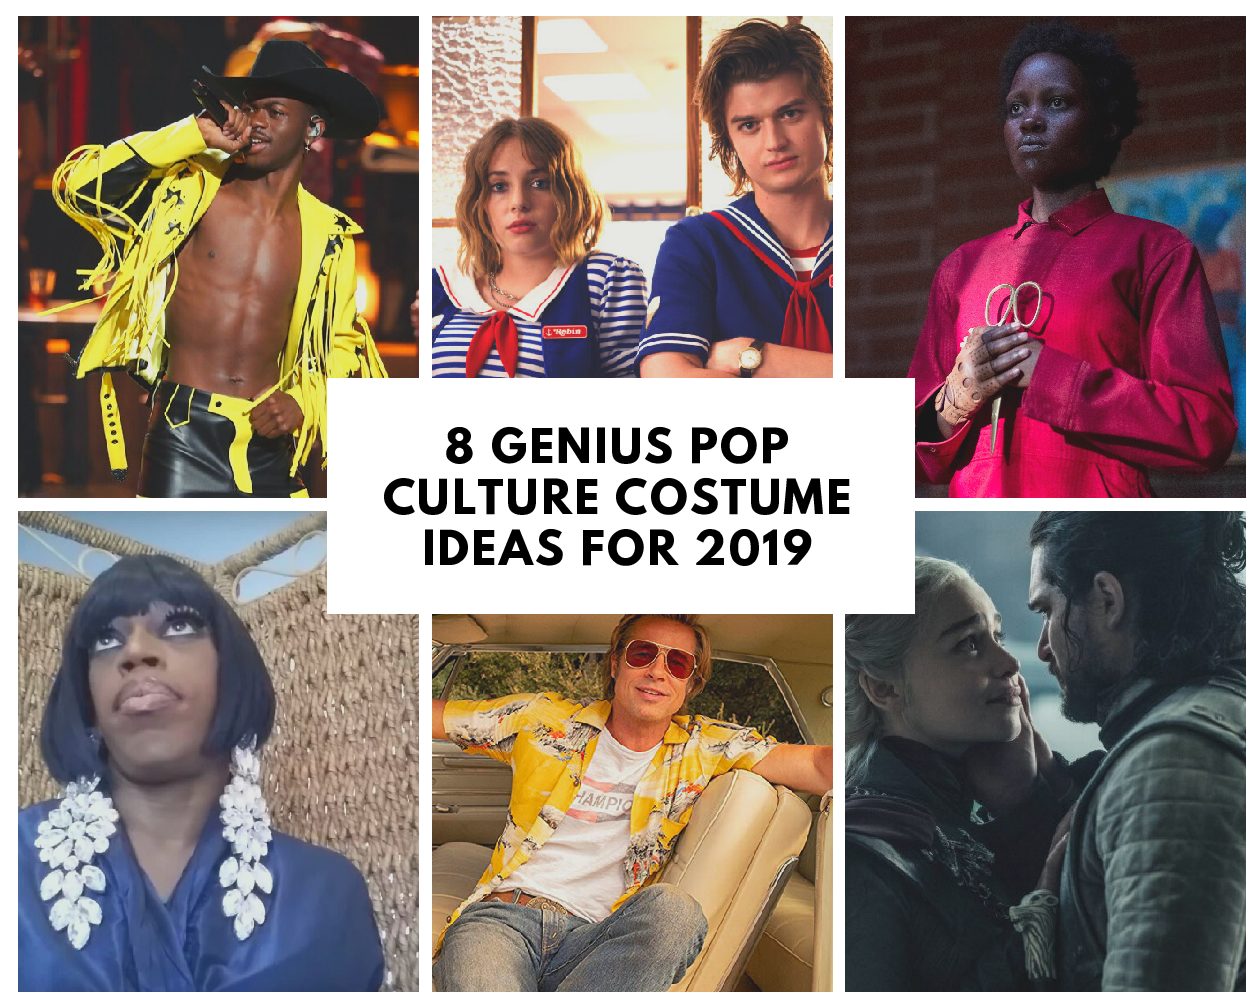 8 Genius Pop Culture Costume Ideas for 2019